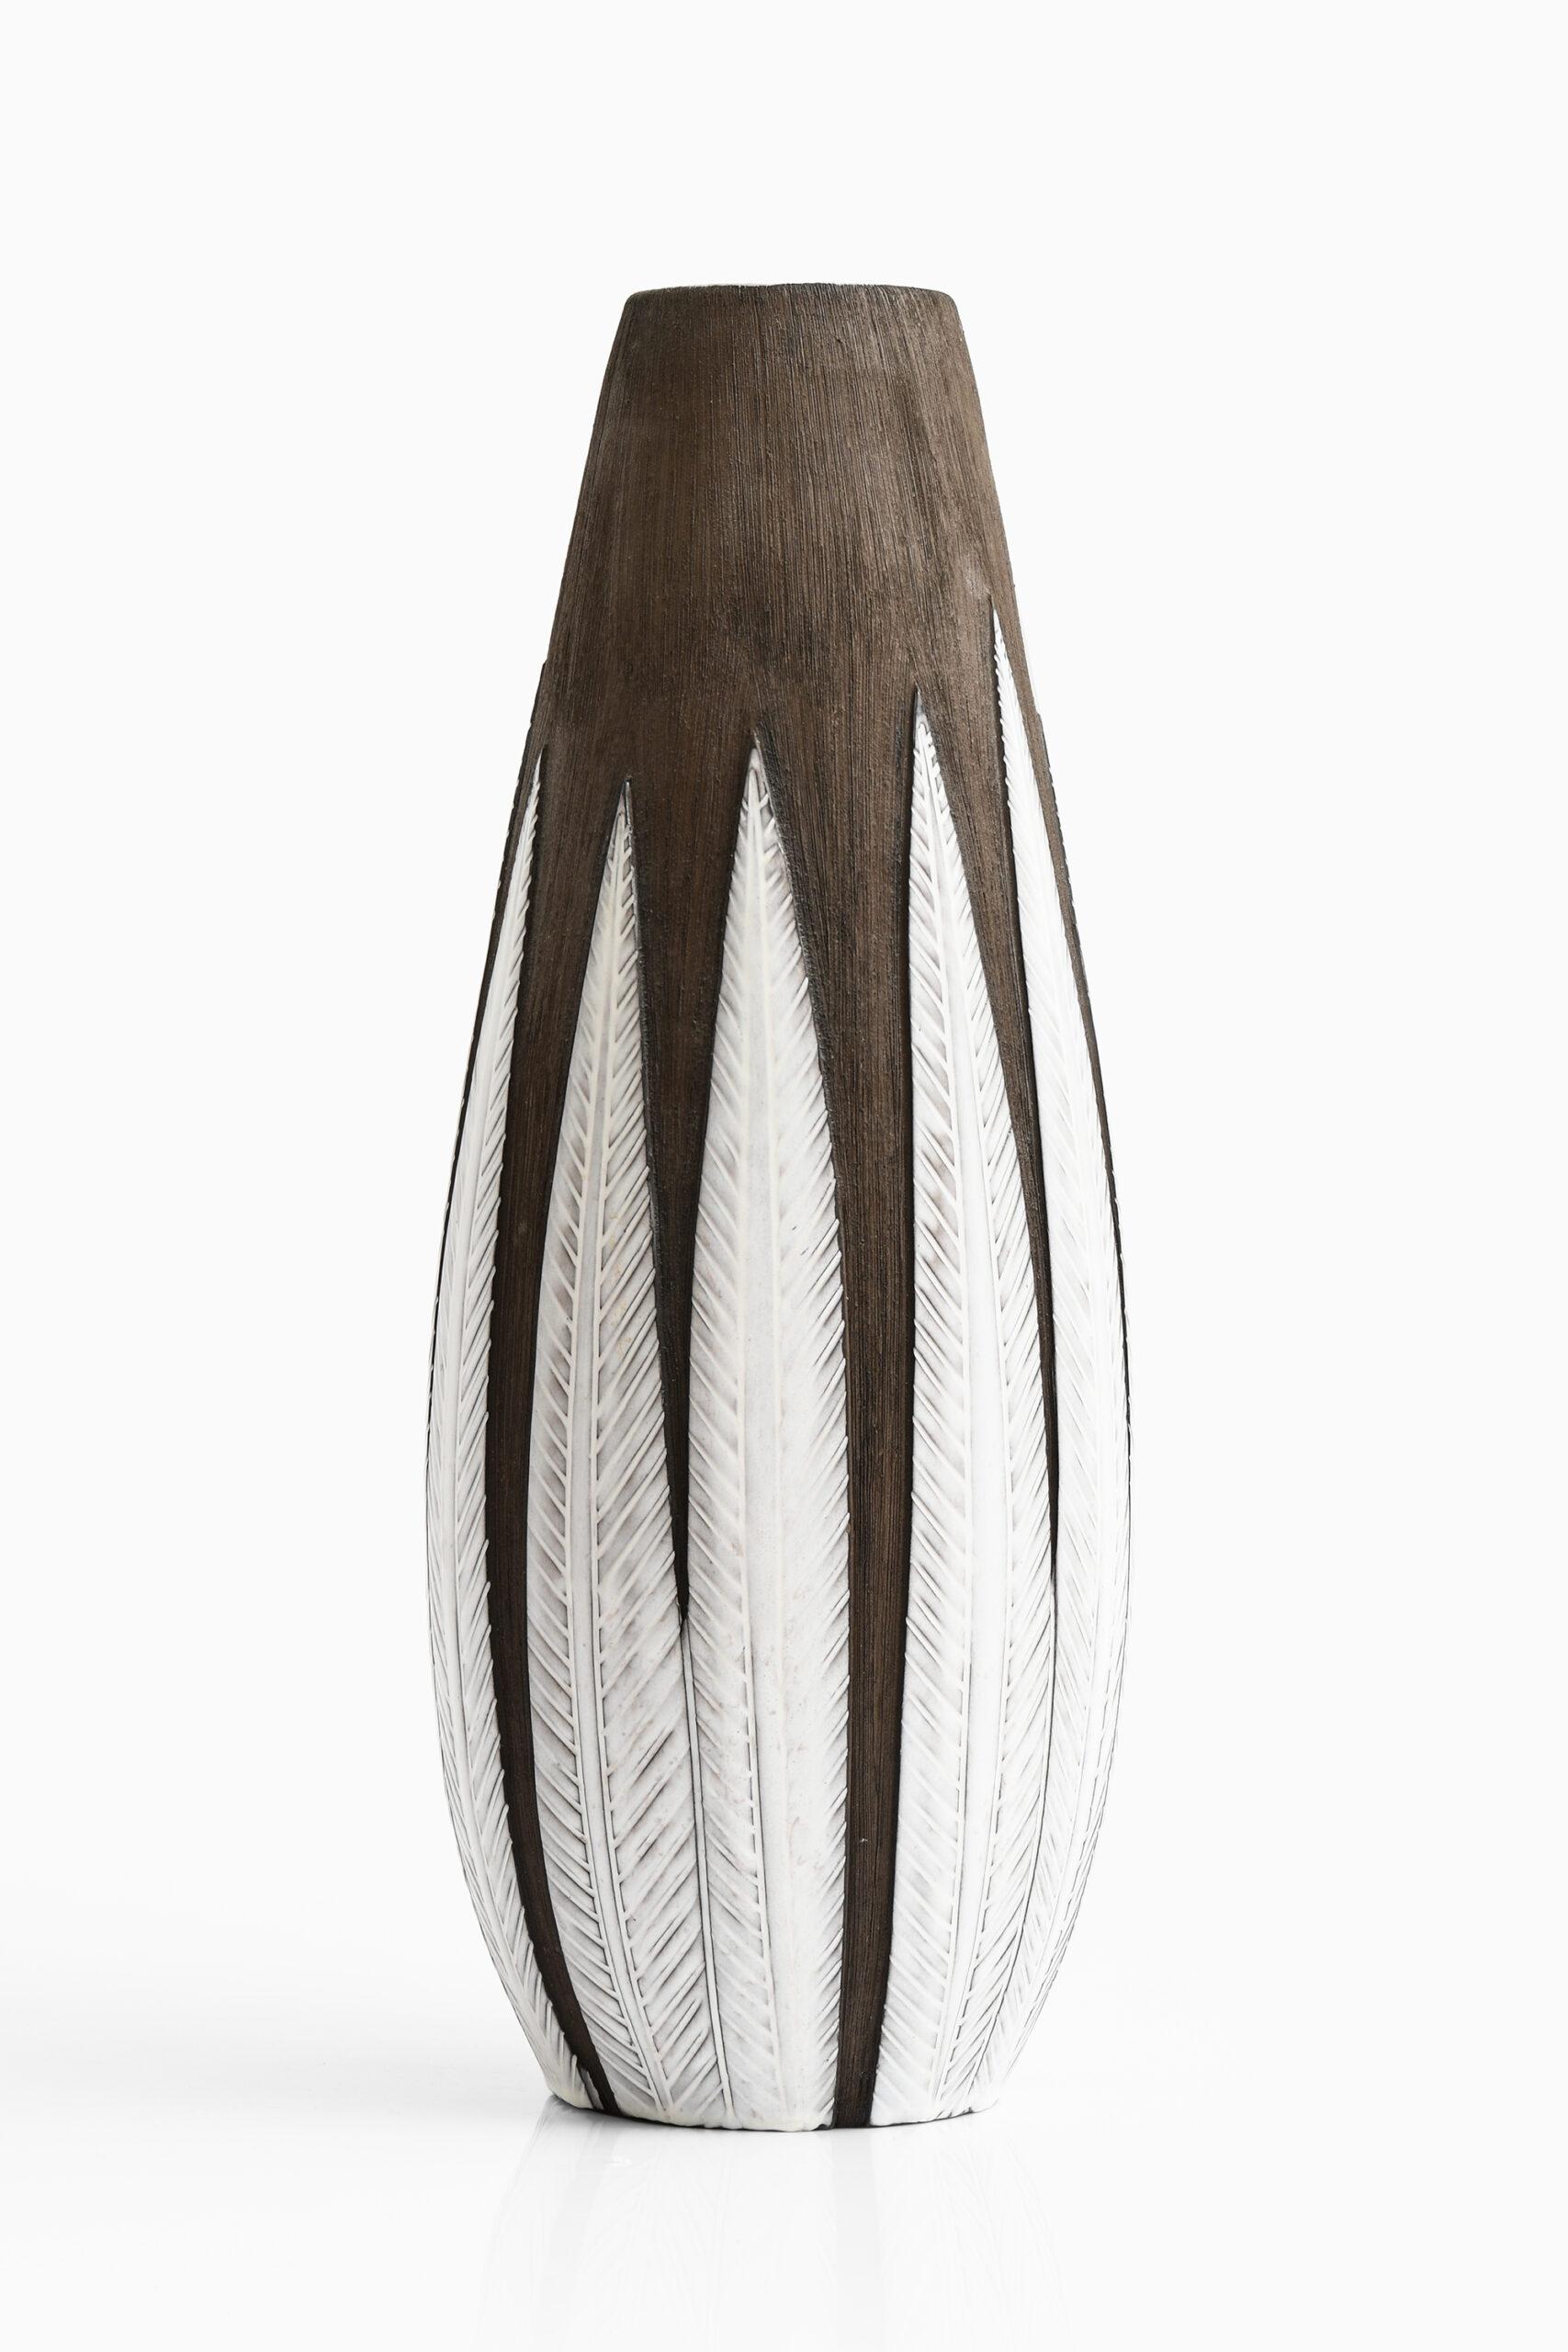 Anna-Lisa Thomson Floor Vase Model Paprika Produced by Upsala Ekeby in  Sweden For Sale at 1stDibs